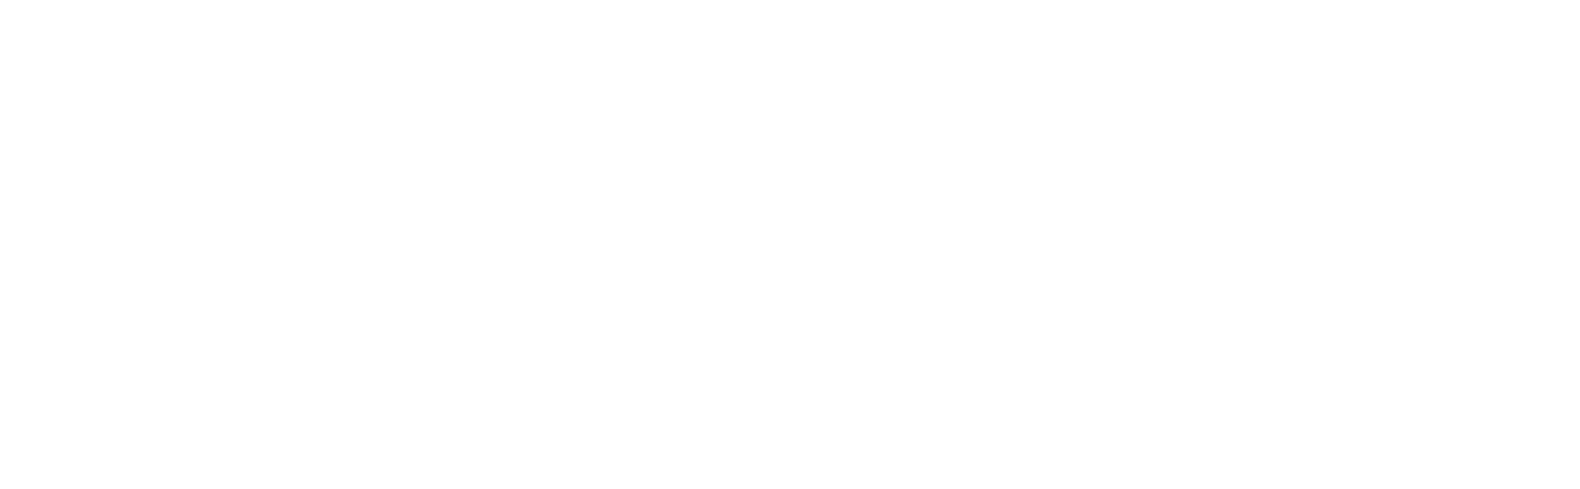 VirTra logo large for dark backgrounds (transparent PNG)